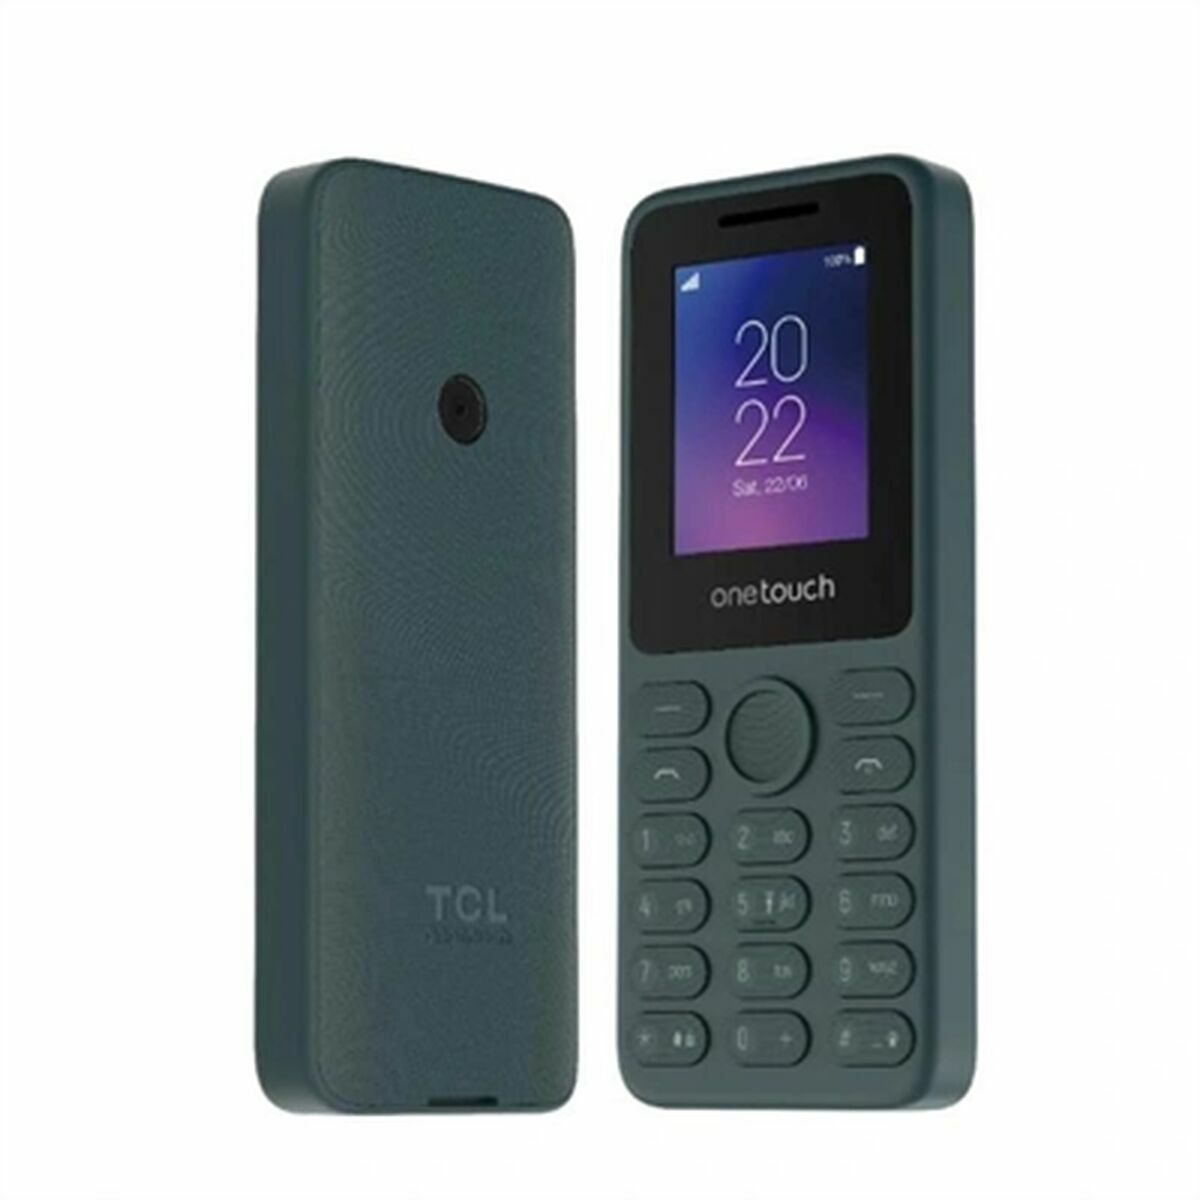 Cellulare per anziani TCL T301P-3BLCA122-2 1,8" Grigio 4 GB RAM